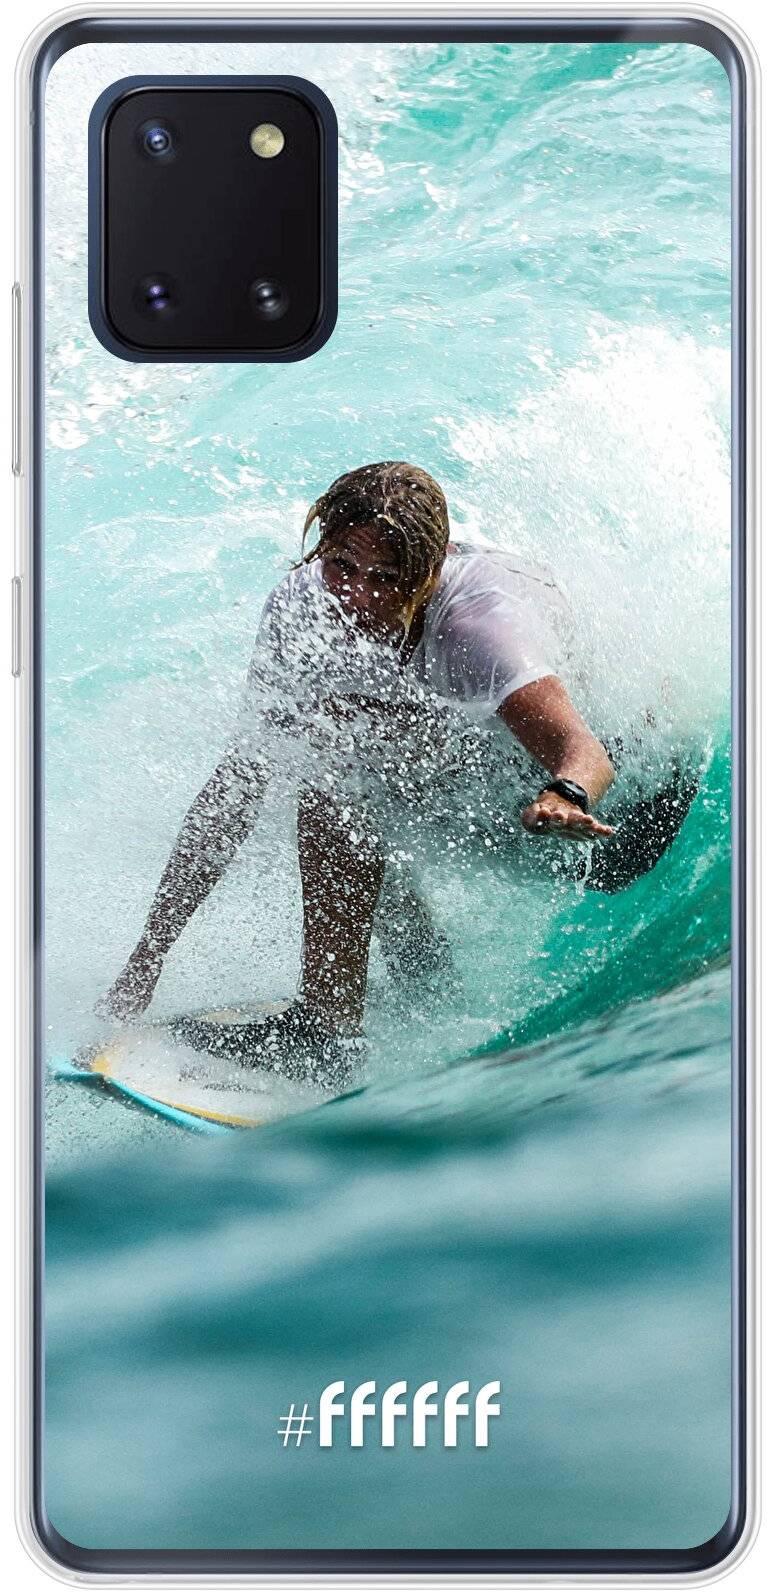 Boy Surfing Galaxy Note 10 Lite